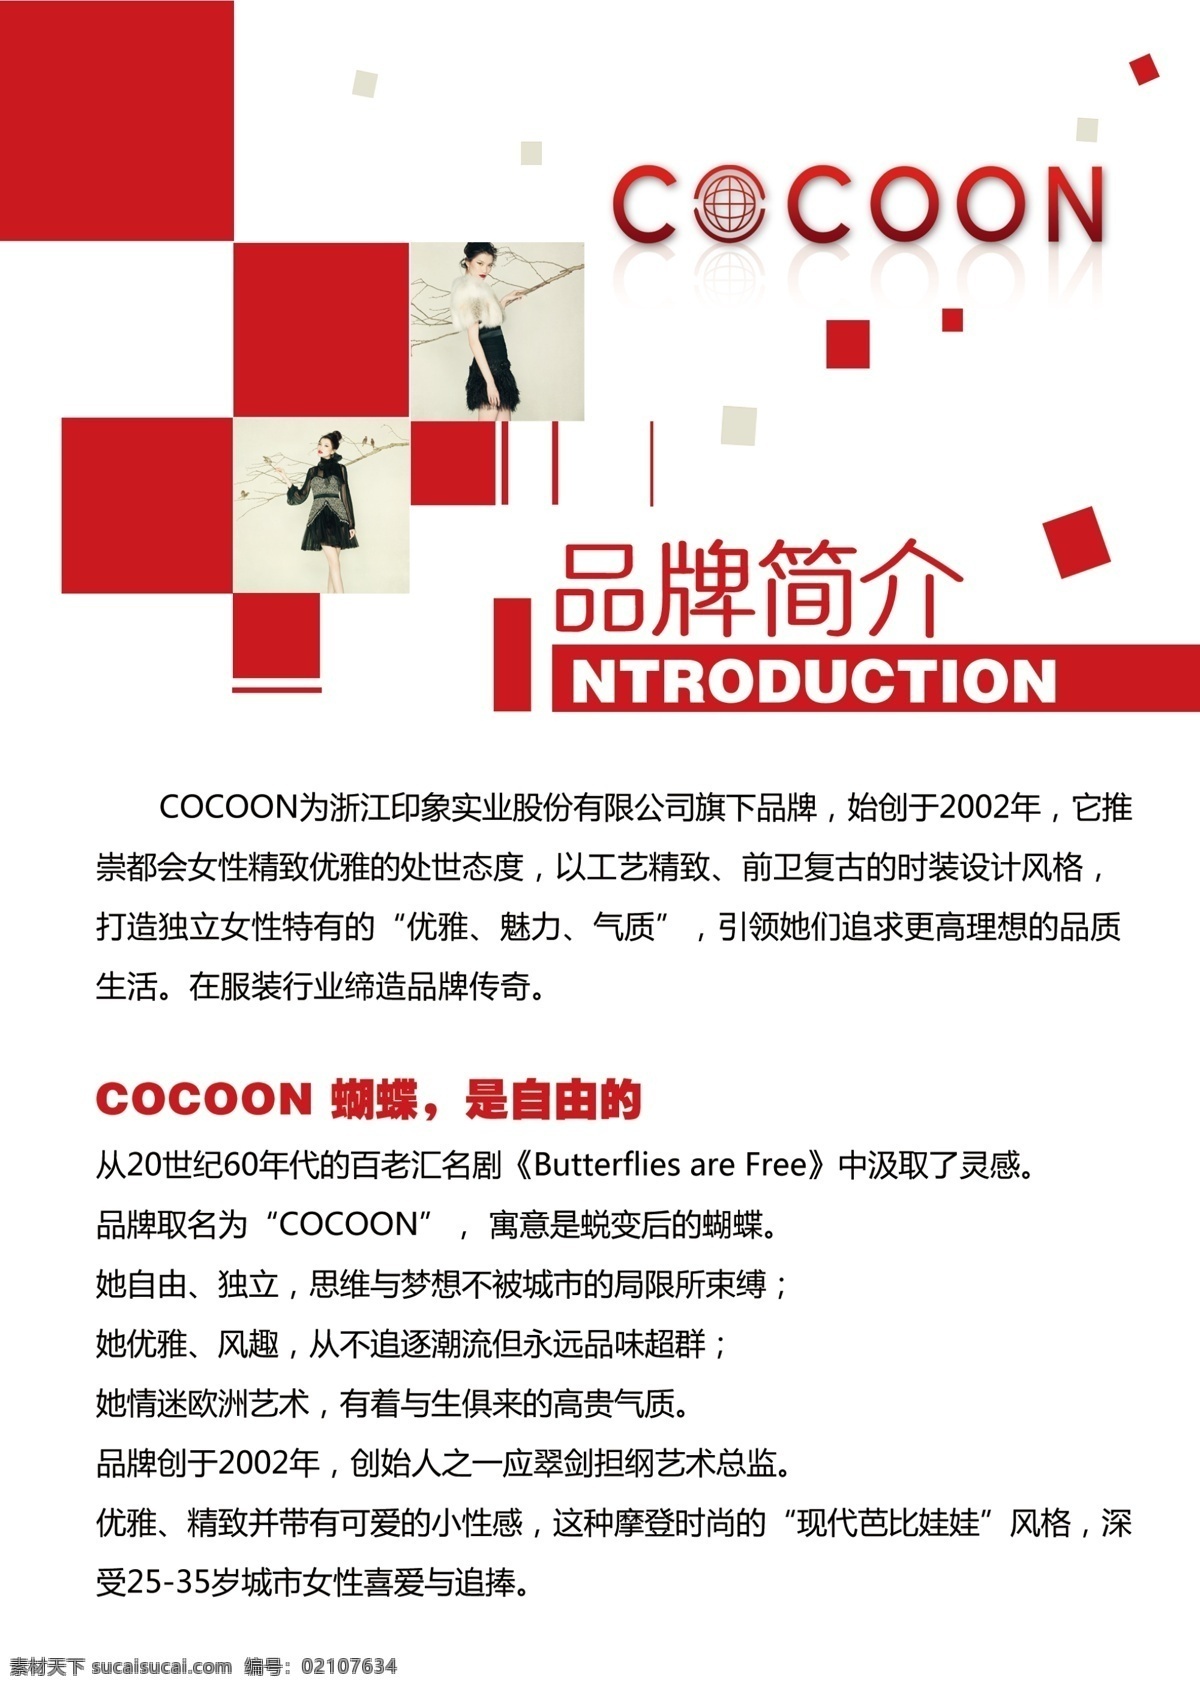 可可 尼 品牌 简介 cocoon 红色 形象图 可可尼 广告设计模板 源文件